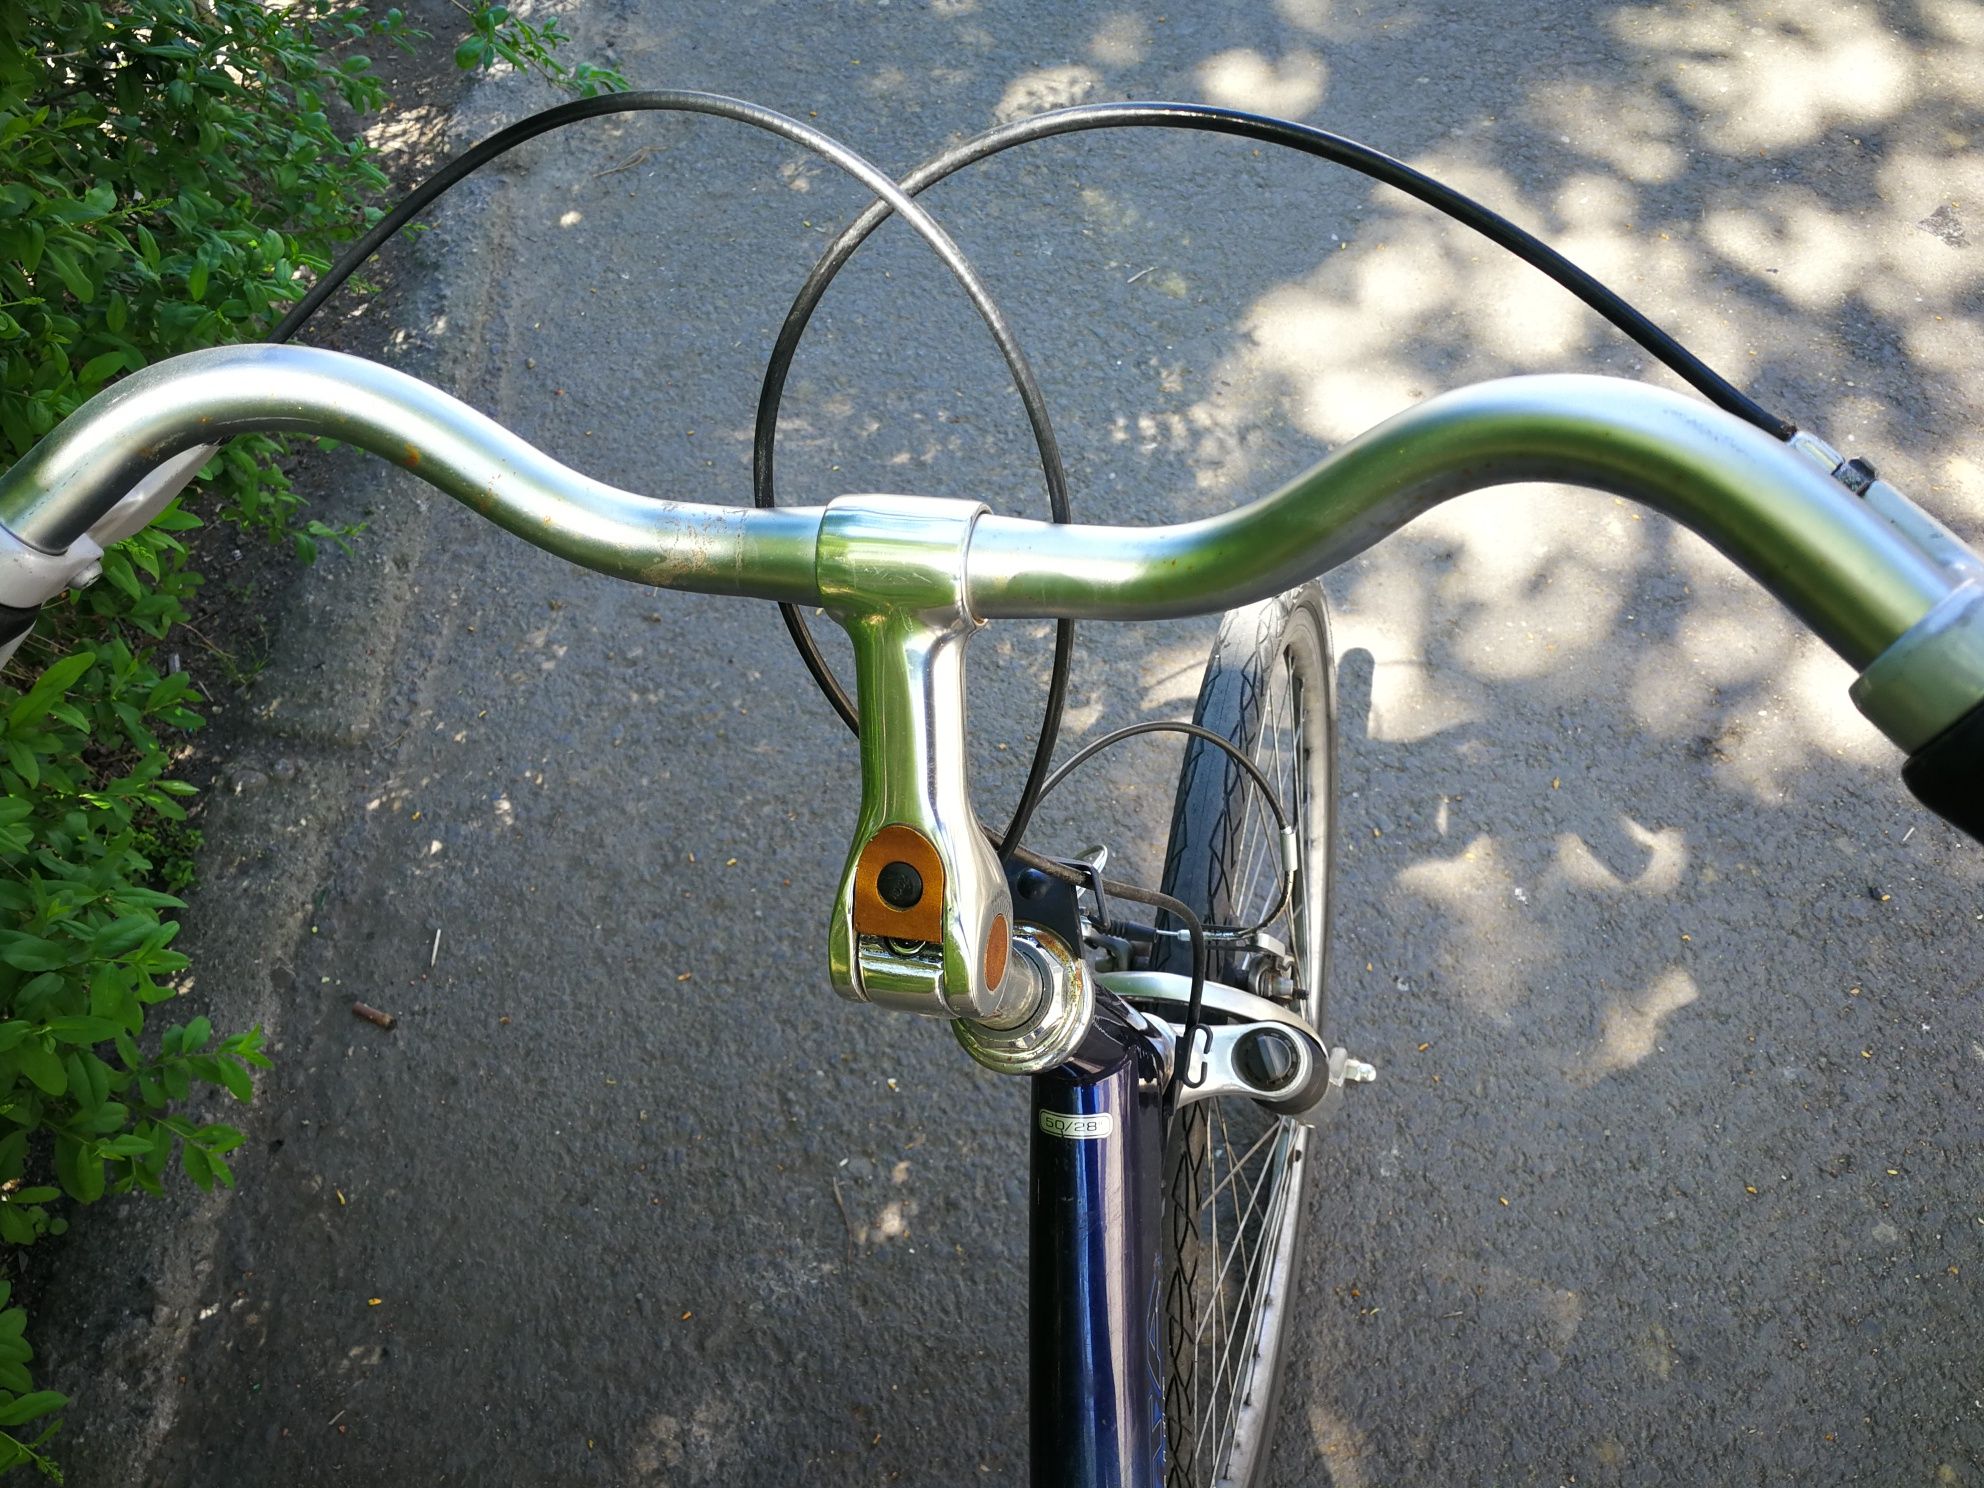 Bicicletă 28" cu suspensii pe față ușoară și practică